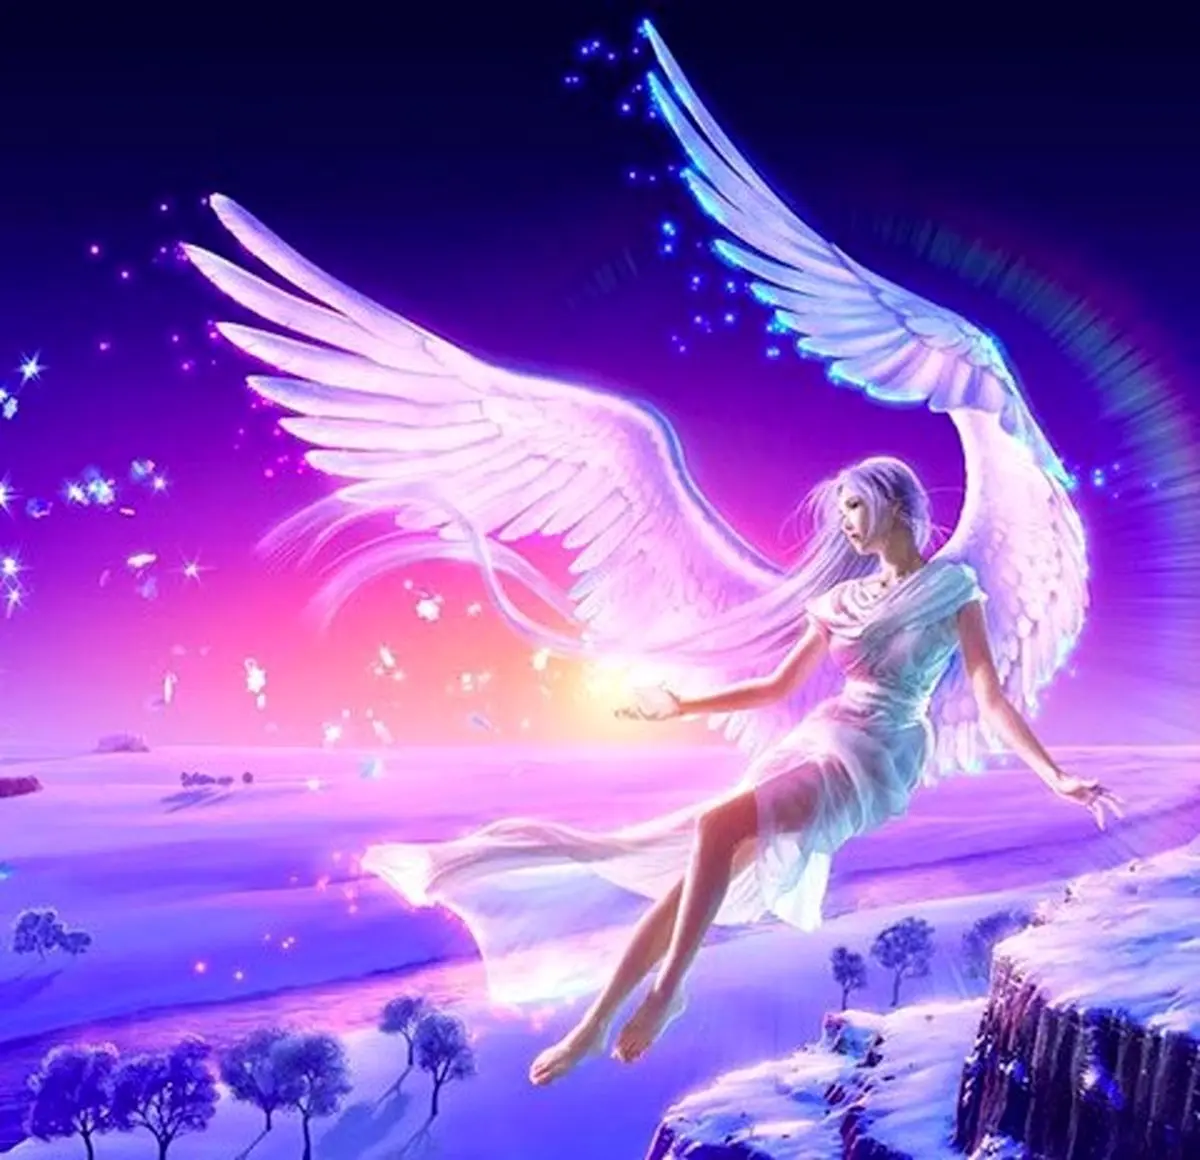 فال فرشتگان 17 مهرماه | فرشتگان برای شما چه پیام مثبتی دارند؟